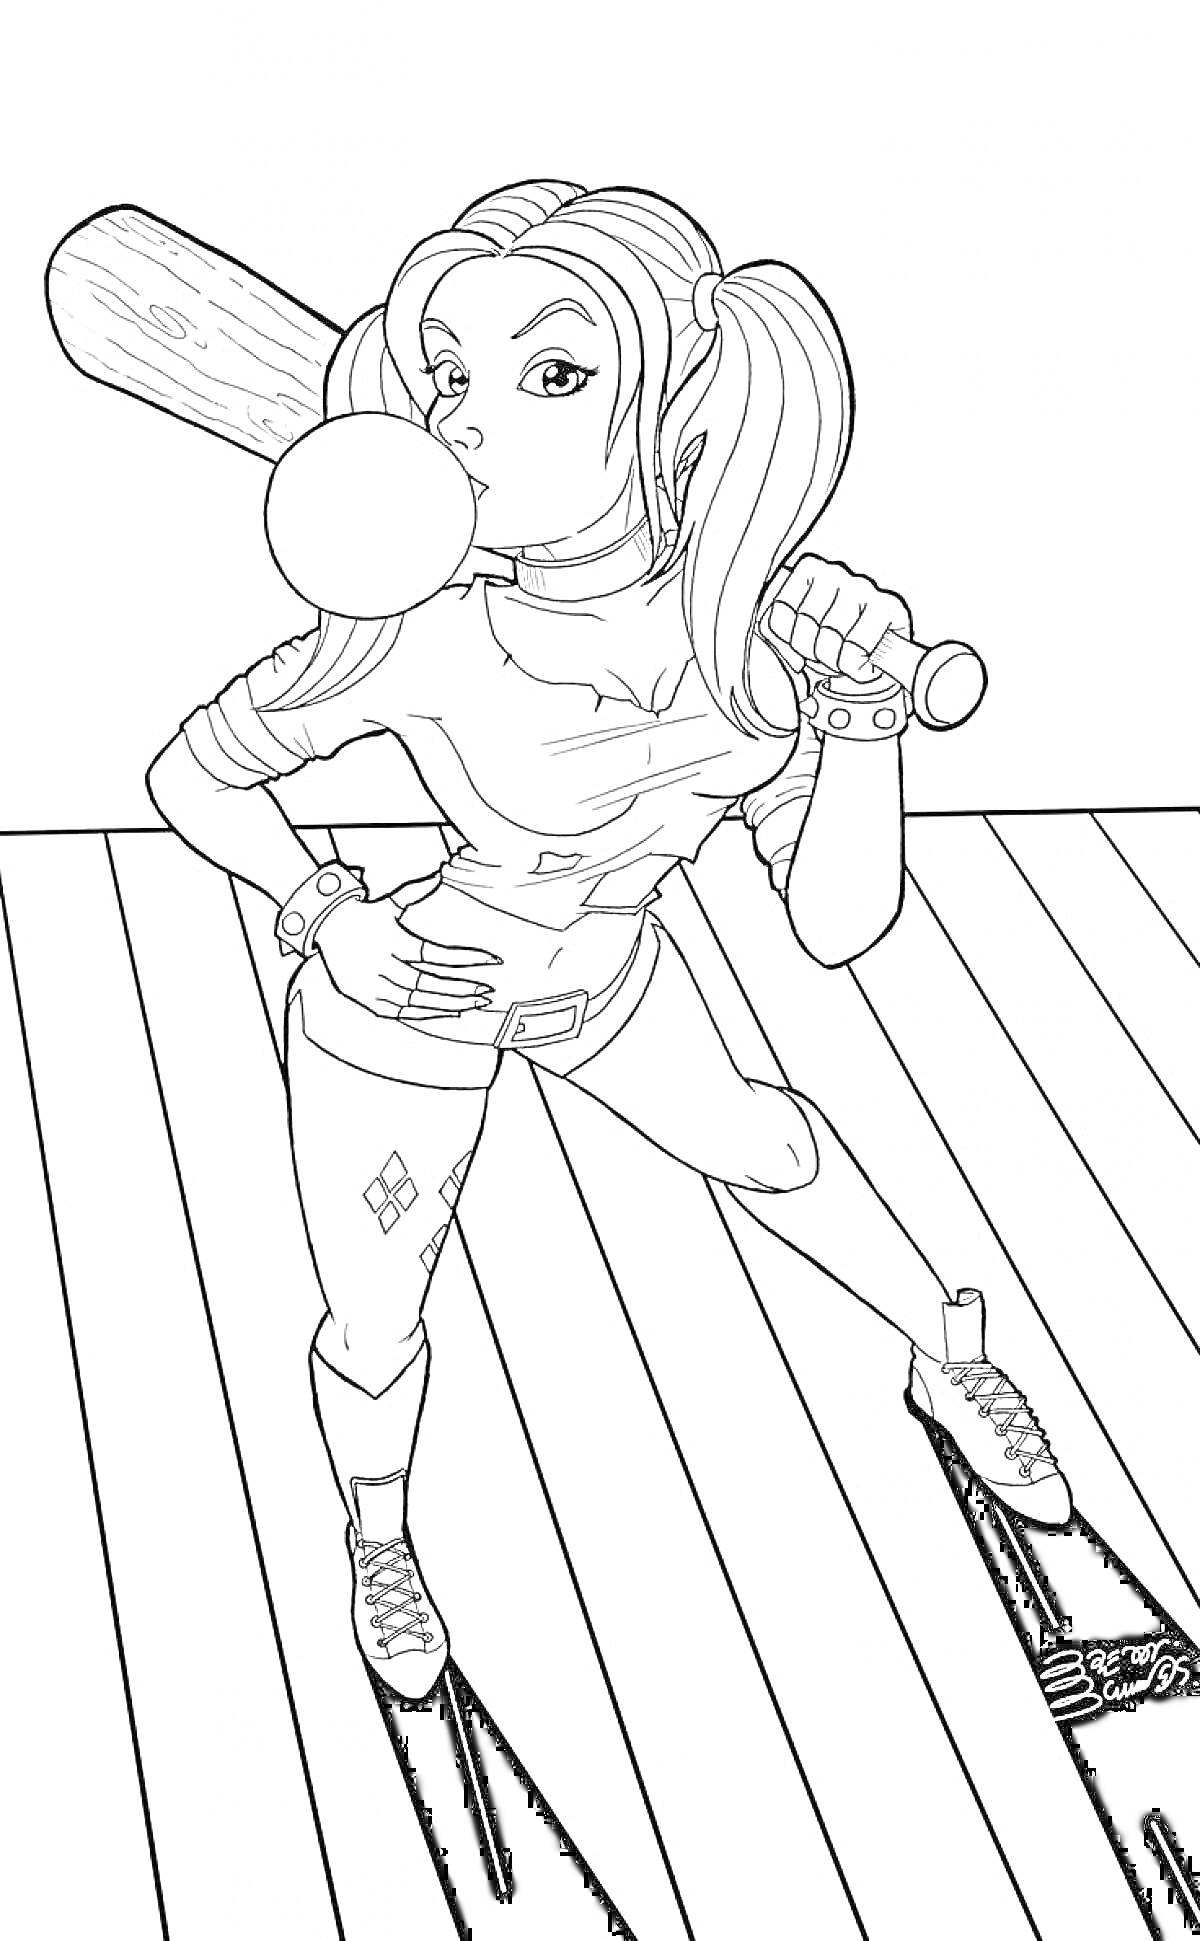 Девушка с хвостиками, держащая биту и надувающая жвачку, на деревянном полу